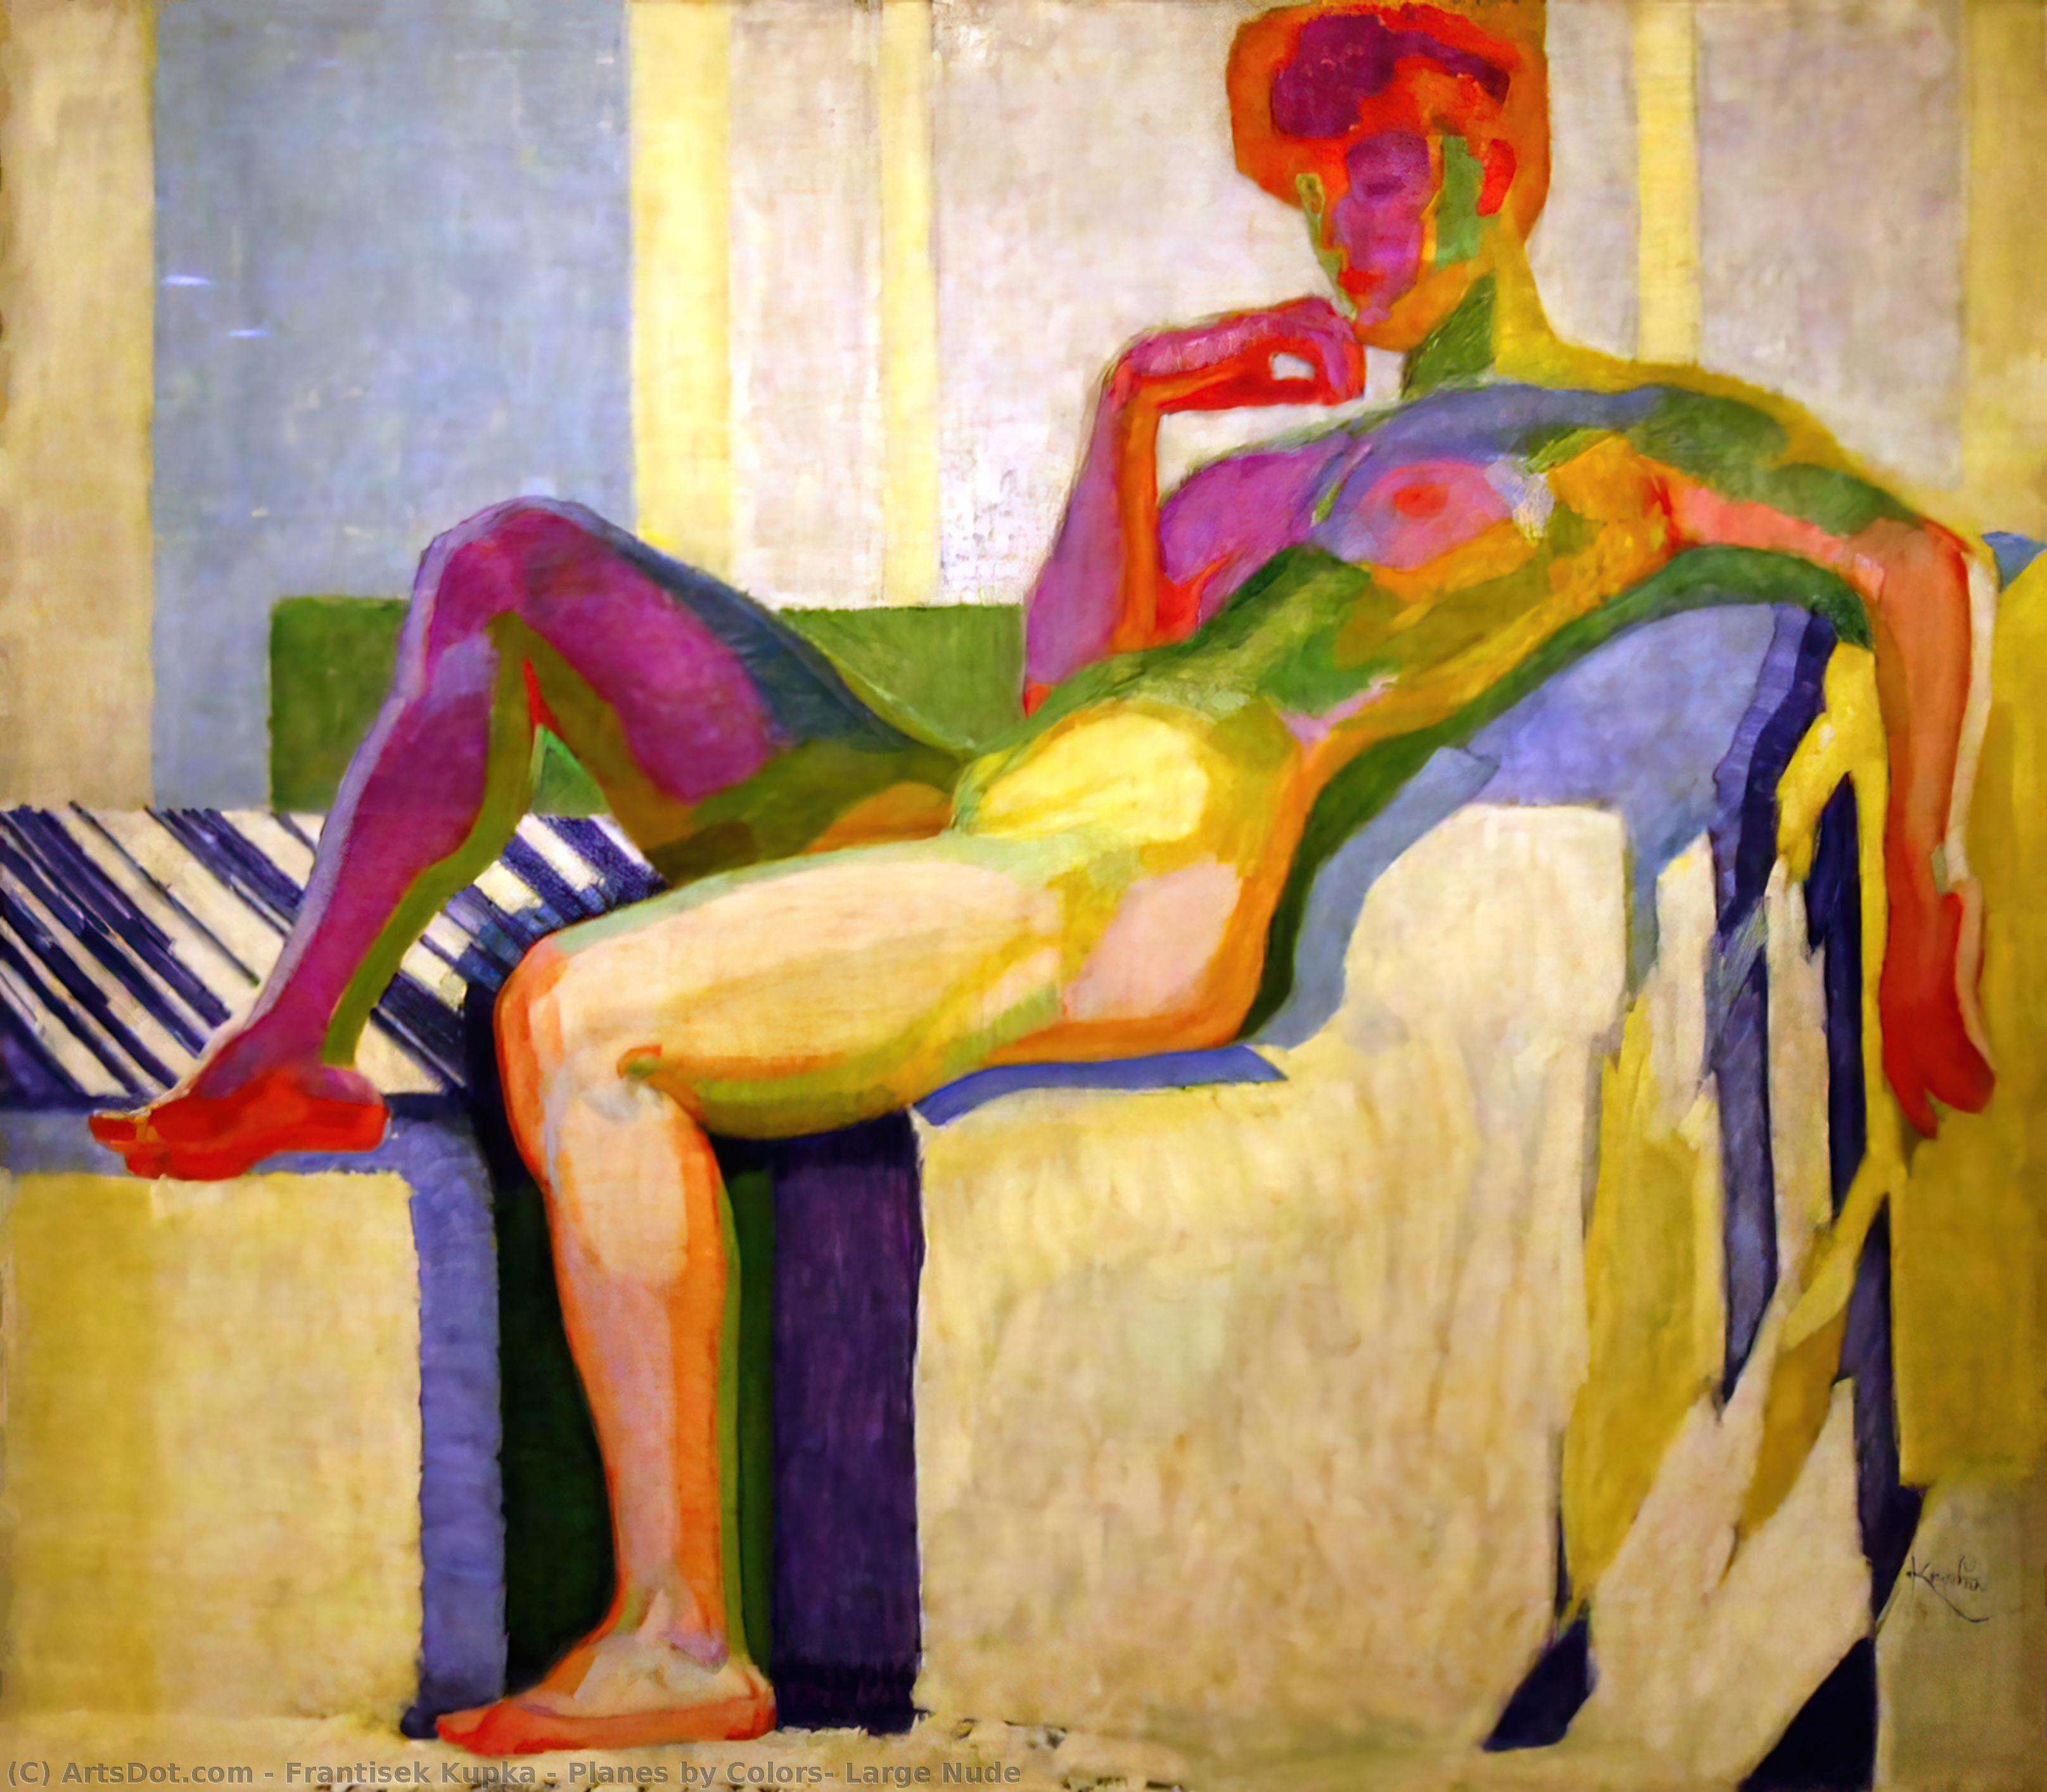 Pedir Grabados De Calidad Del Museo Planes de colores, gran nudo, 1910 de Frantisek Kupka (Inspirado por) (1871-1957, Czech Republic) | ArtsDot.com